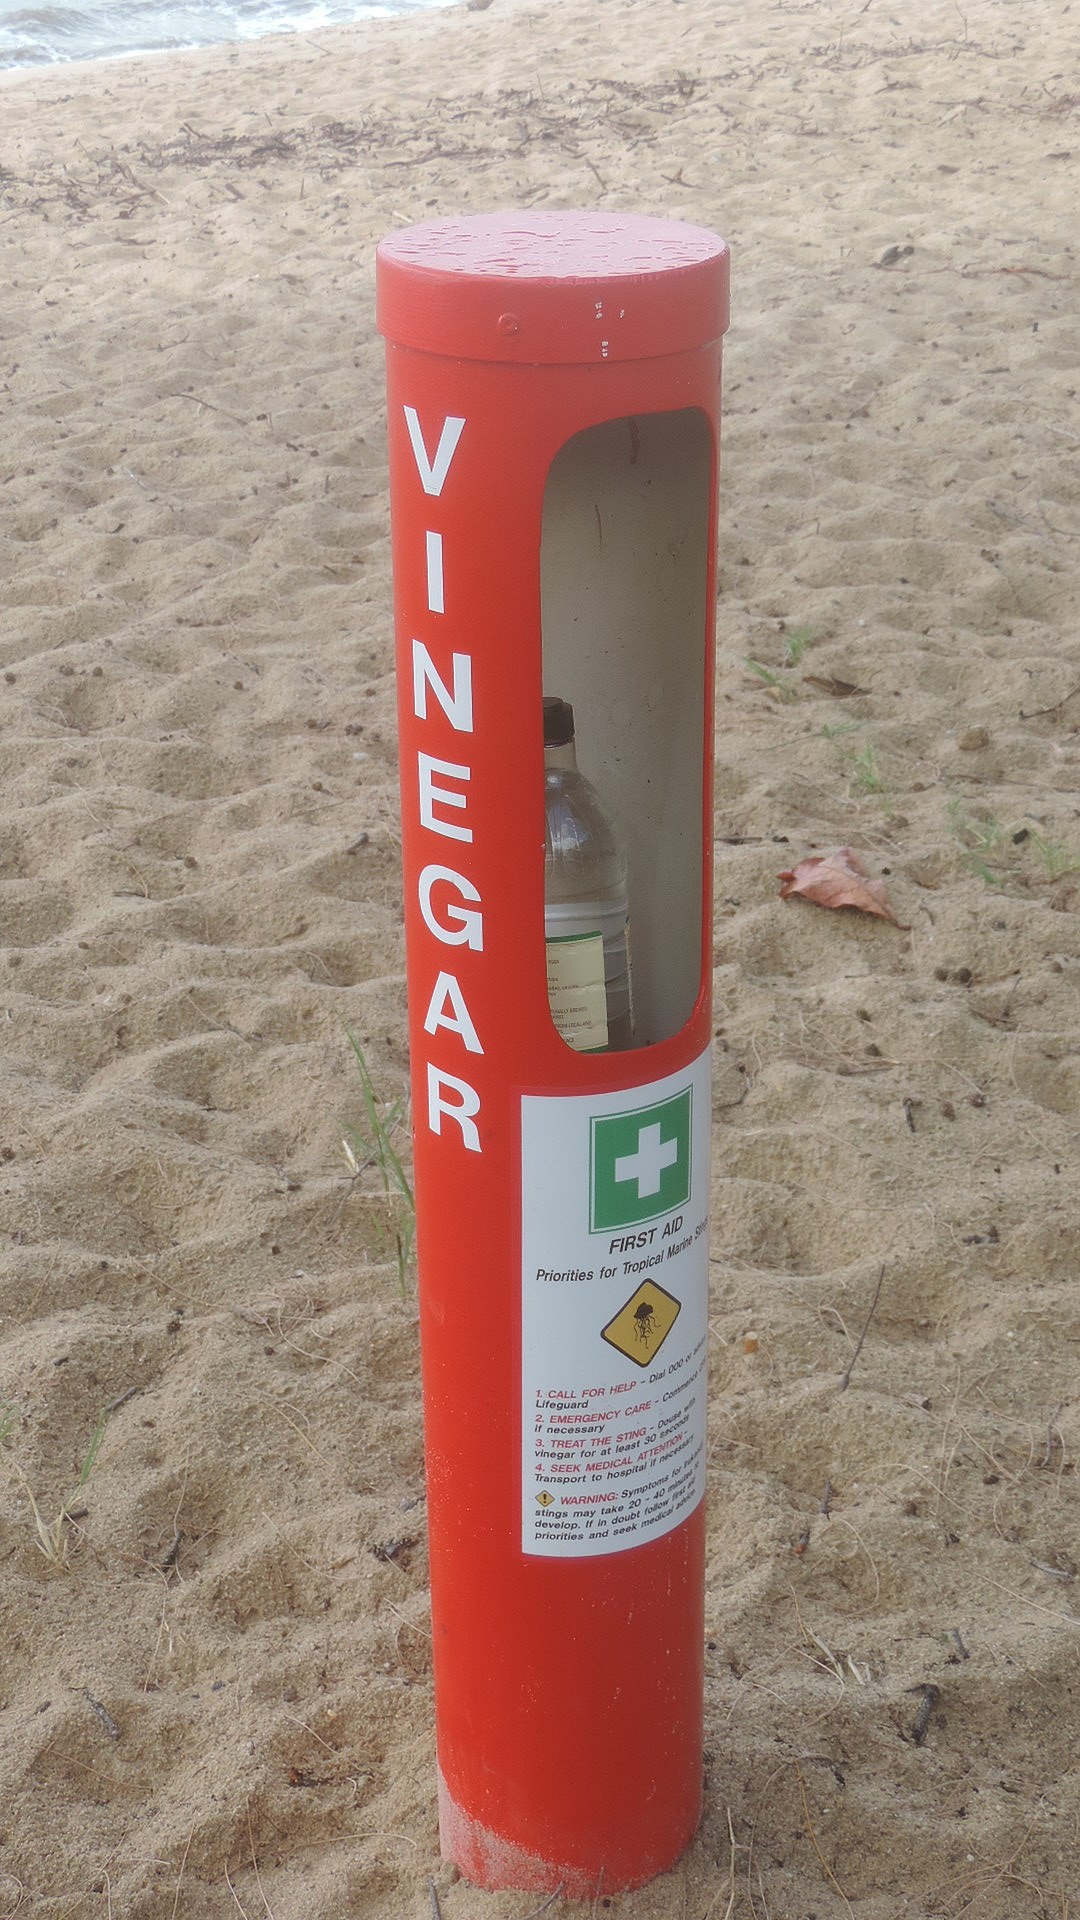 vinegar station at beach